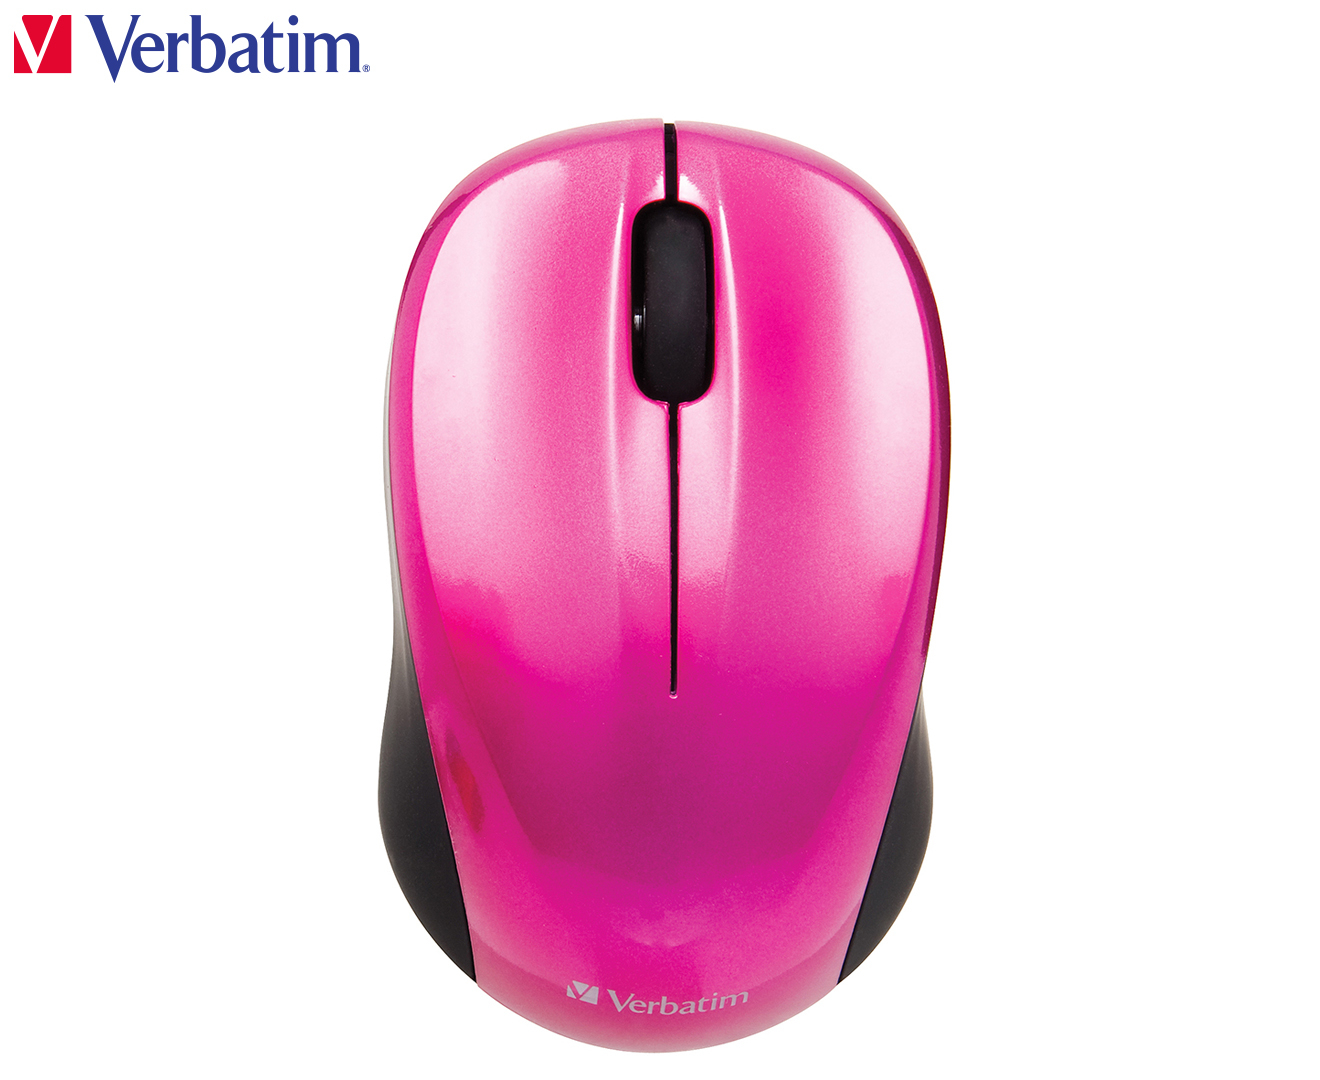 Розовая беспроводная мышь. Microsoft mobile Mouse 3600 pn7-00004 Black Bluetooth. Мышь Sweex mi426 Wireless Mouse Pitaya Pink USB. Мышь Sweex mi027 Optical Scroll Mouse Neon Pink USB. Мышь Verbatim Wireless Laser NANOMOUSE Pink USB.